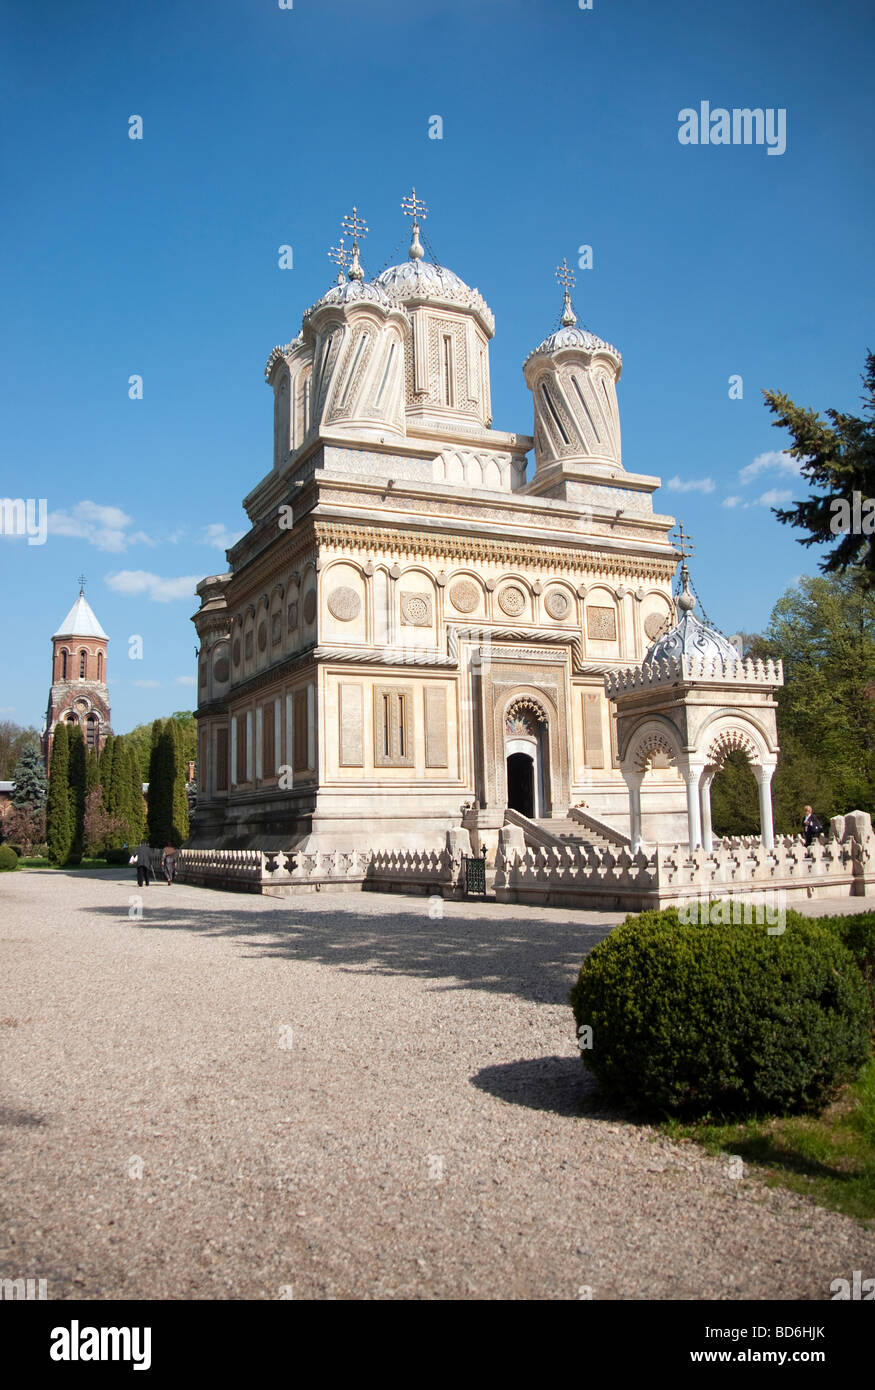 Rumäniens Kloster von Curtea de Arges, ähnlich einem Mausoleum im byzantinischen Stil mit maurischen Arabesken Stockfoto